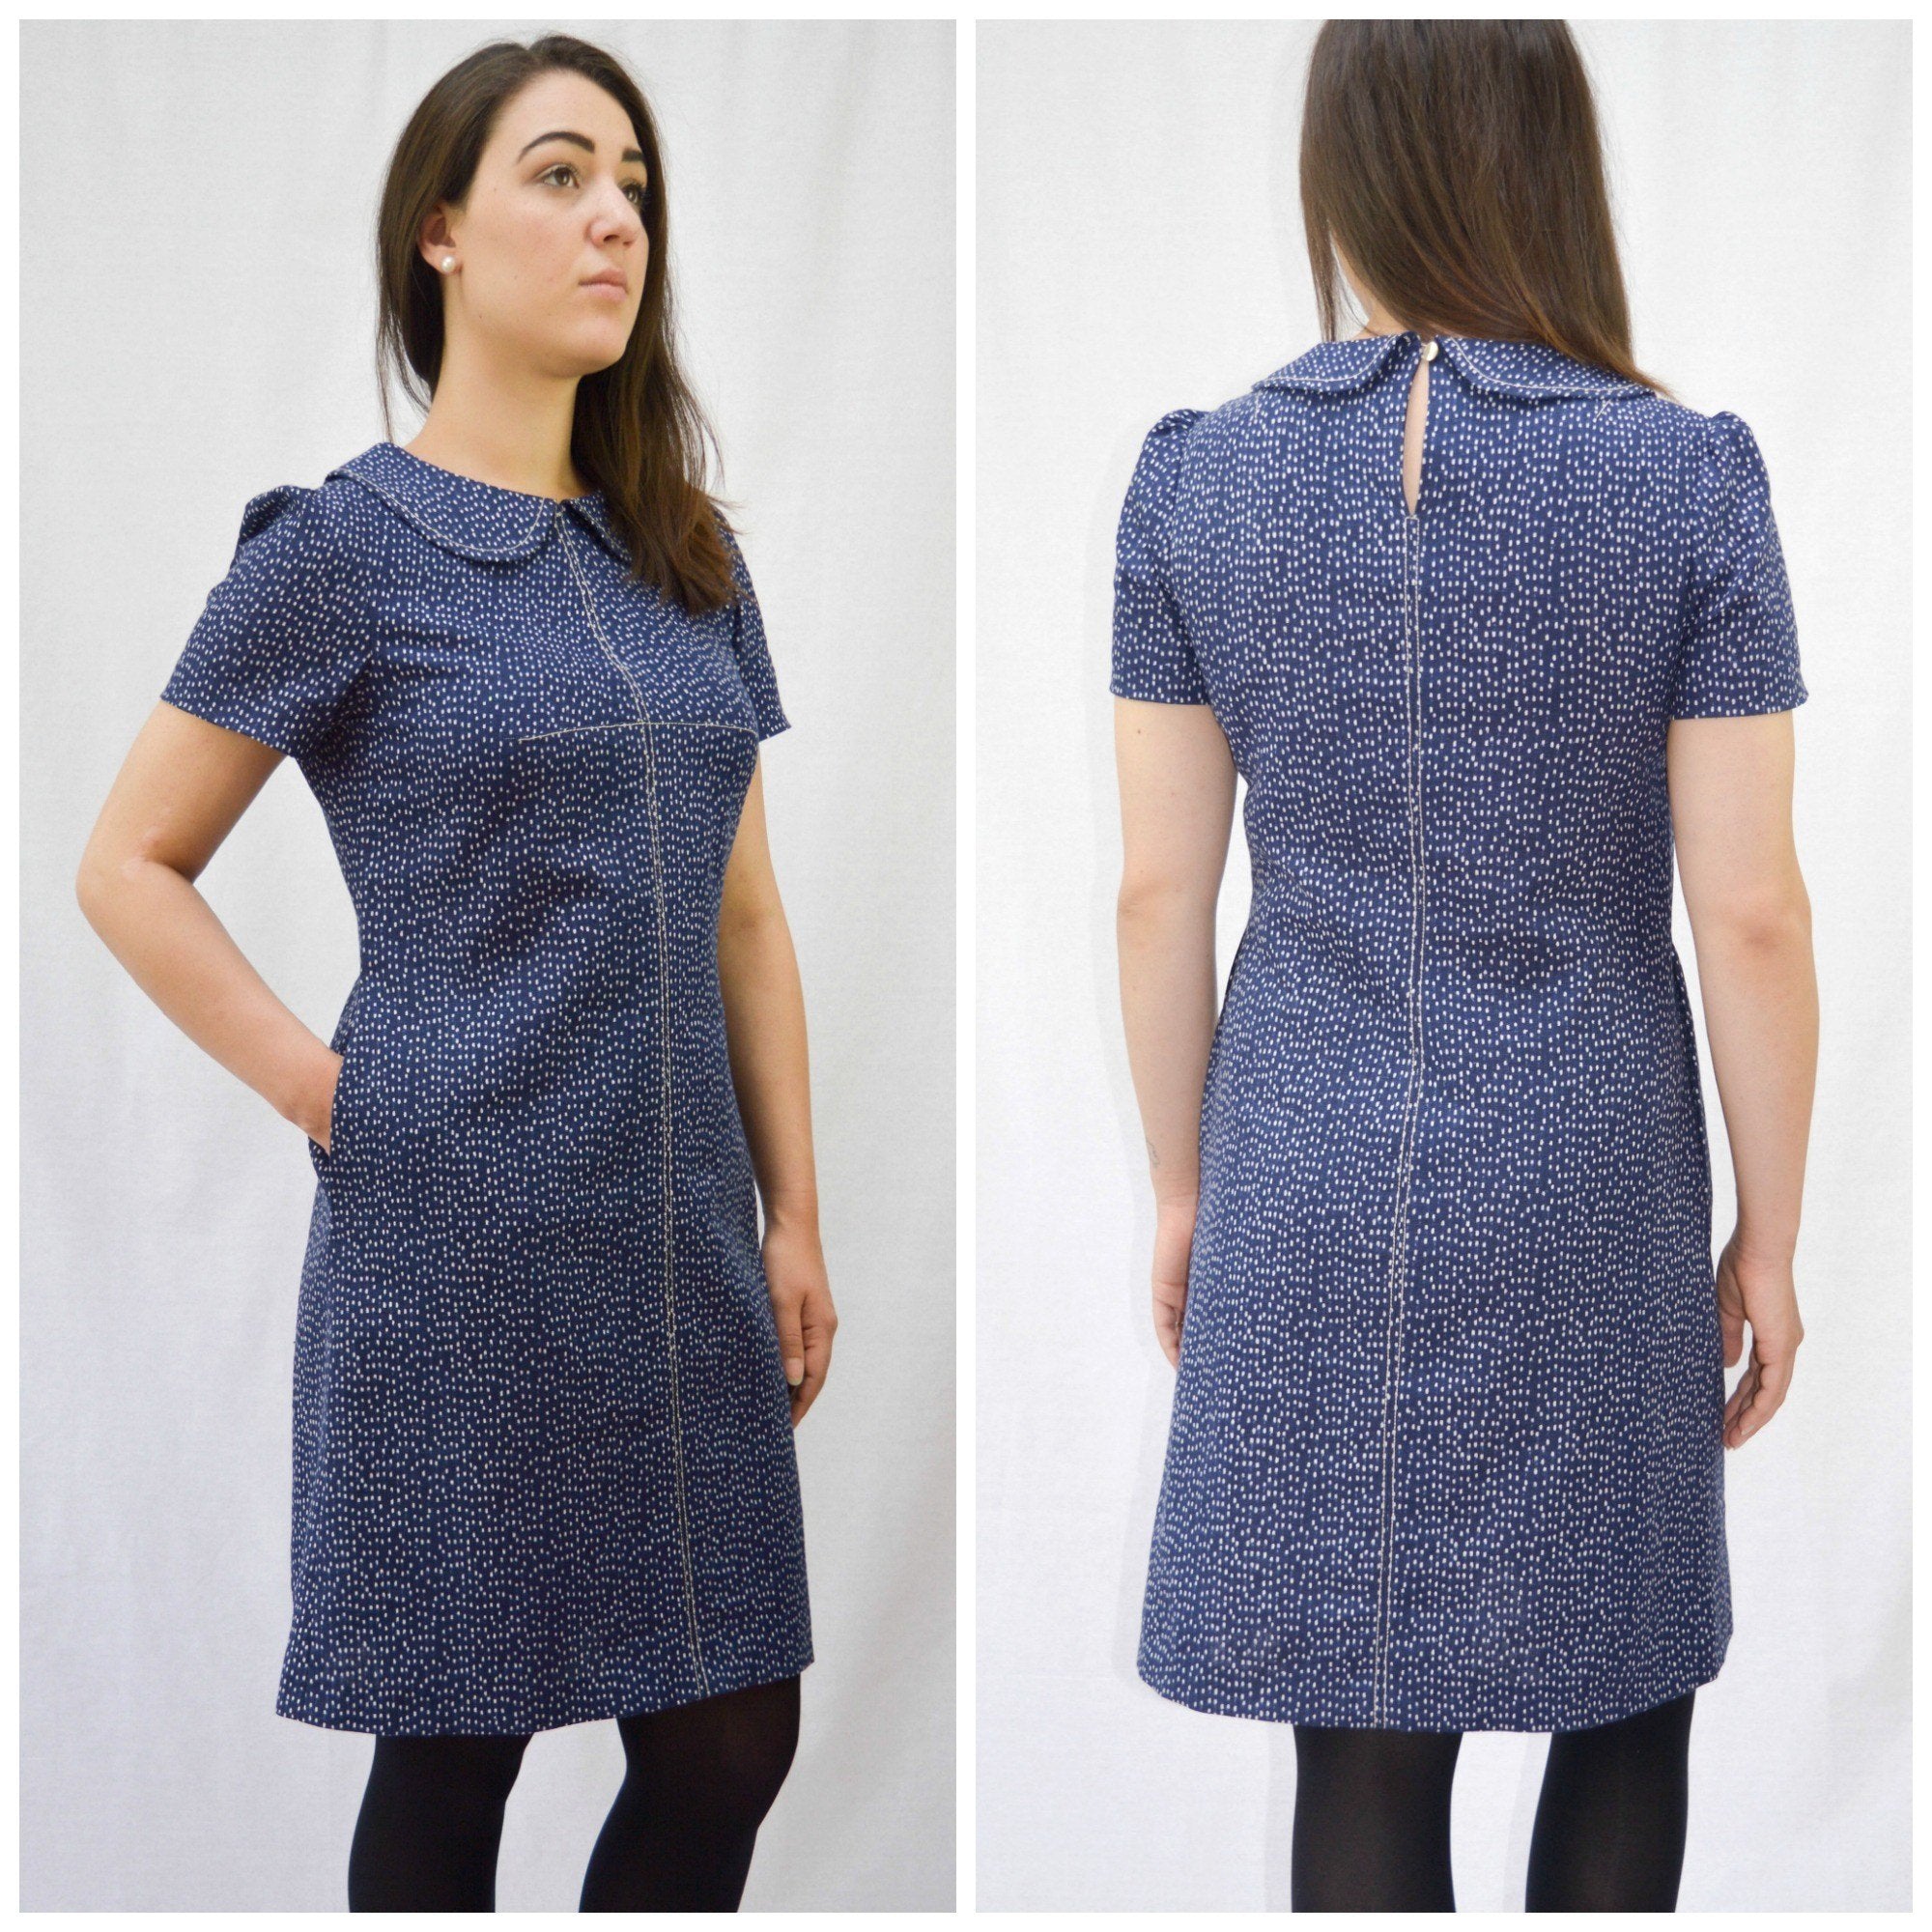 Maven Sewing Patterns - The Kitty Dress